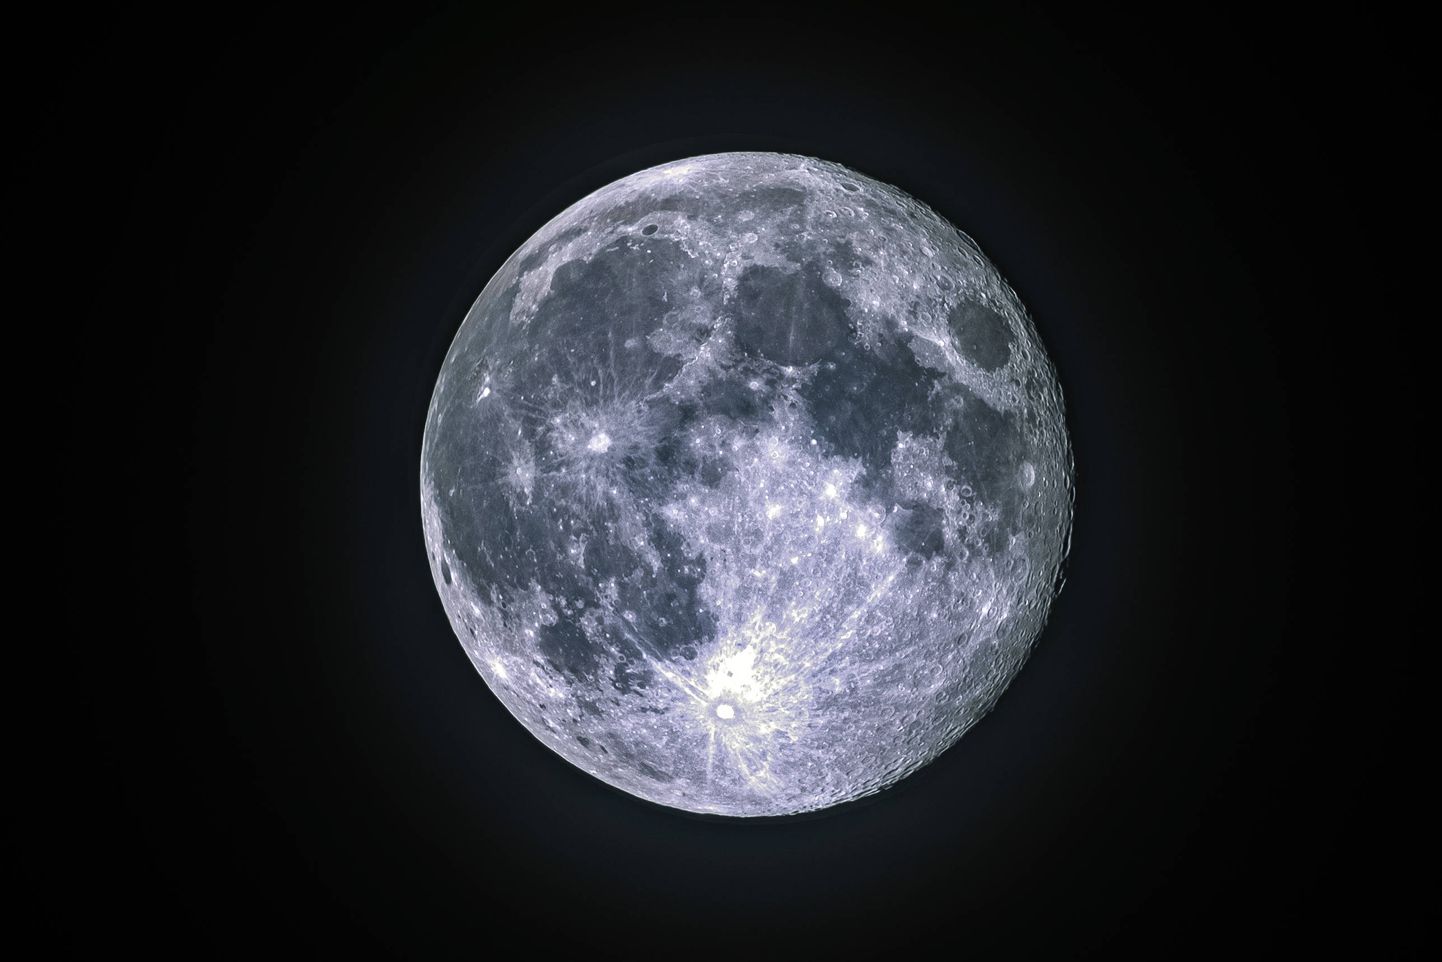 Programm Artemis 3 on USA esimene Kuu-missioon pärast Apollo programmi lõppu 1972. aastal.